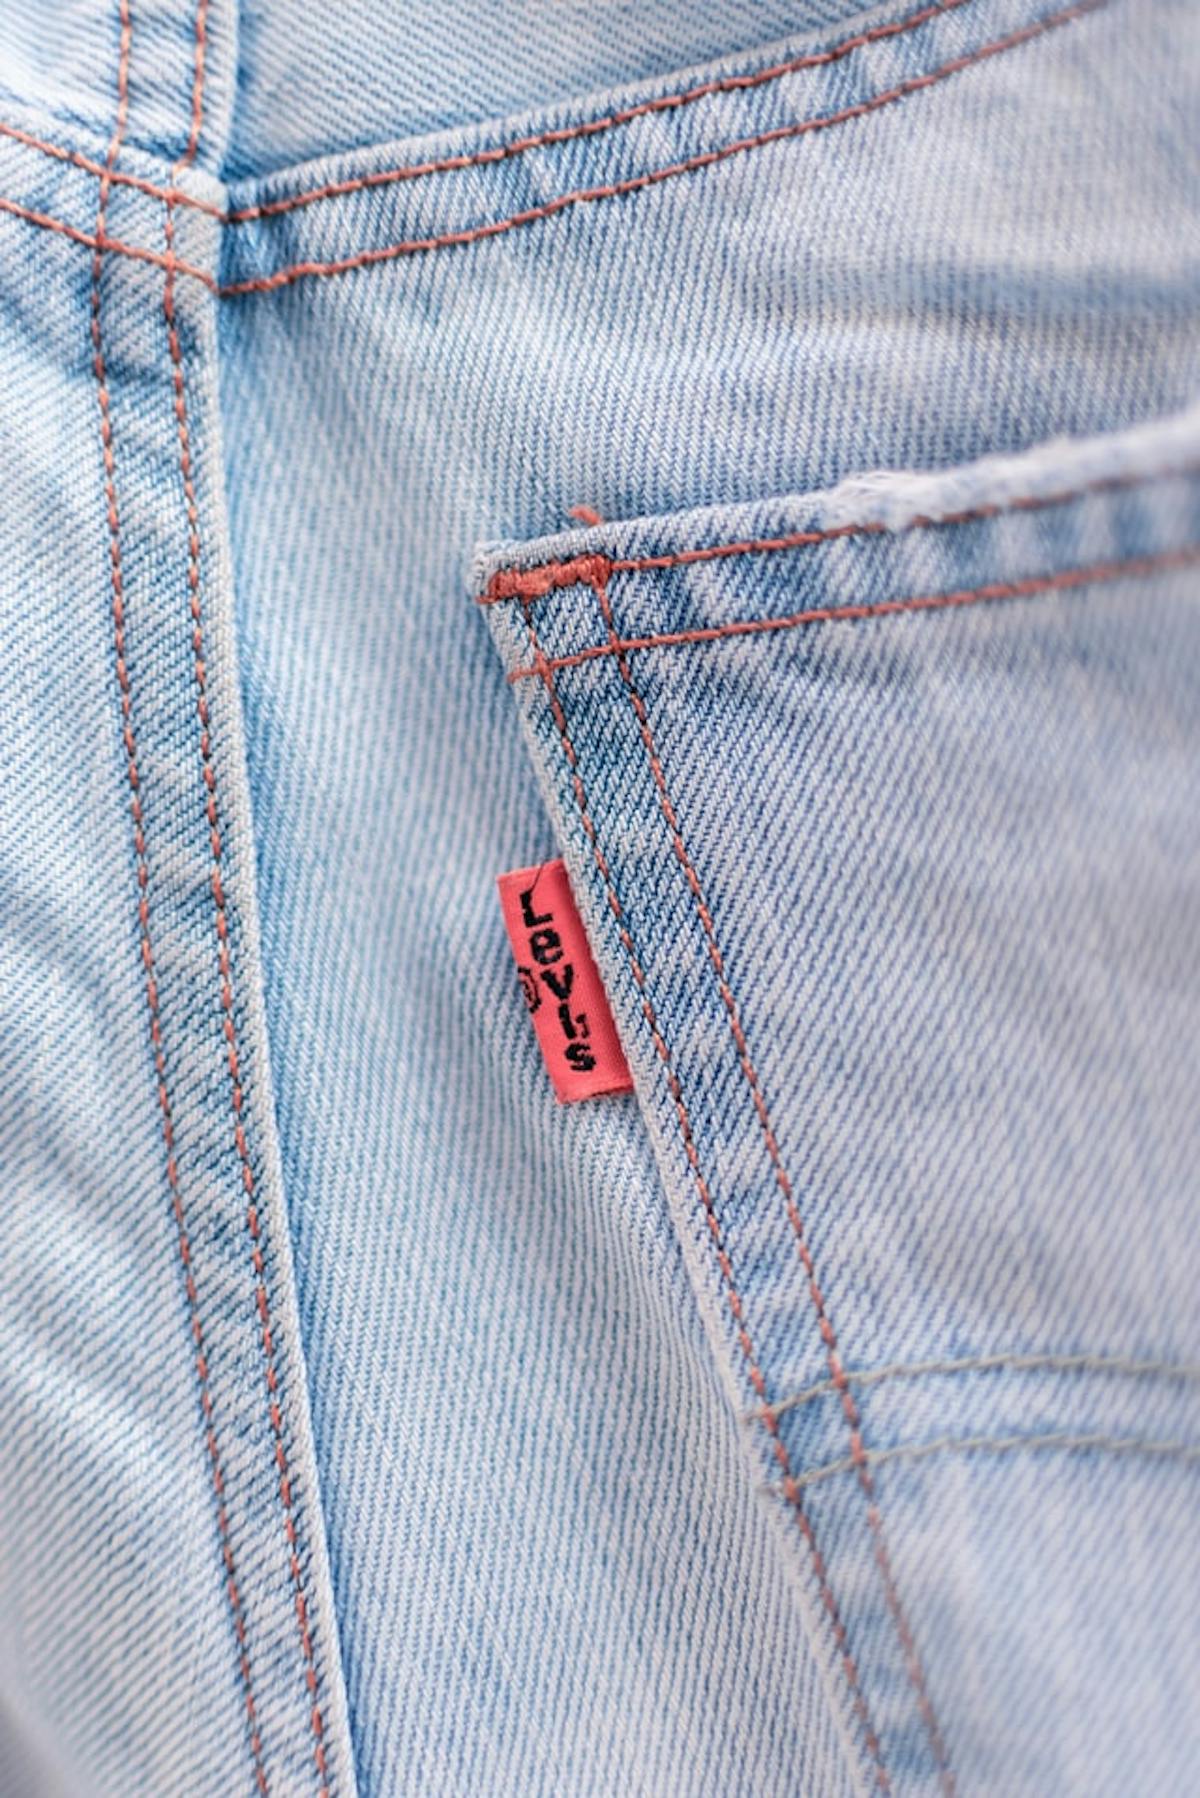  Gros plan d&#039;une étiquette Levi&#039;s sur une poche arrière